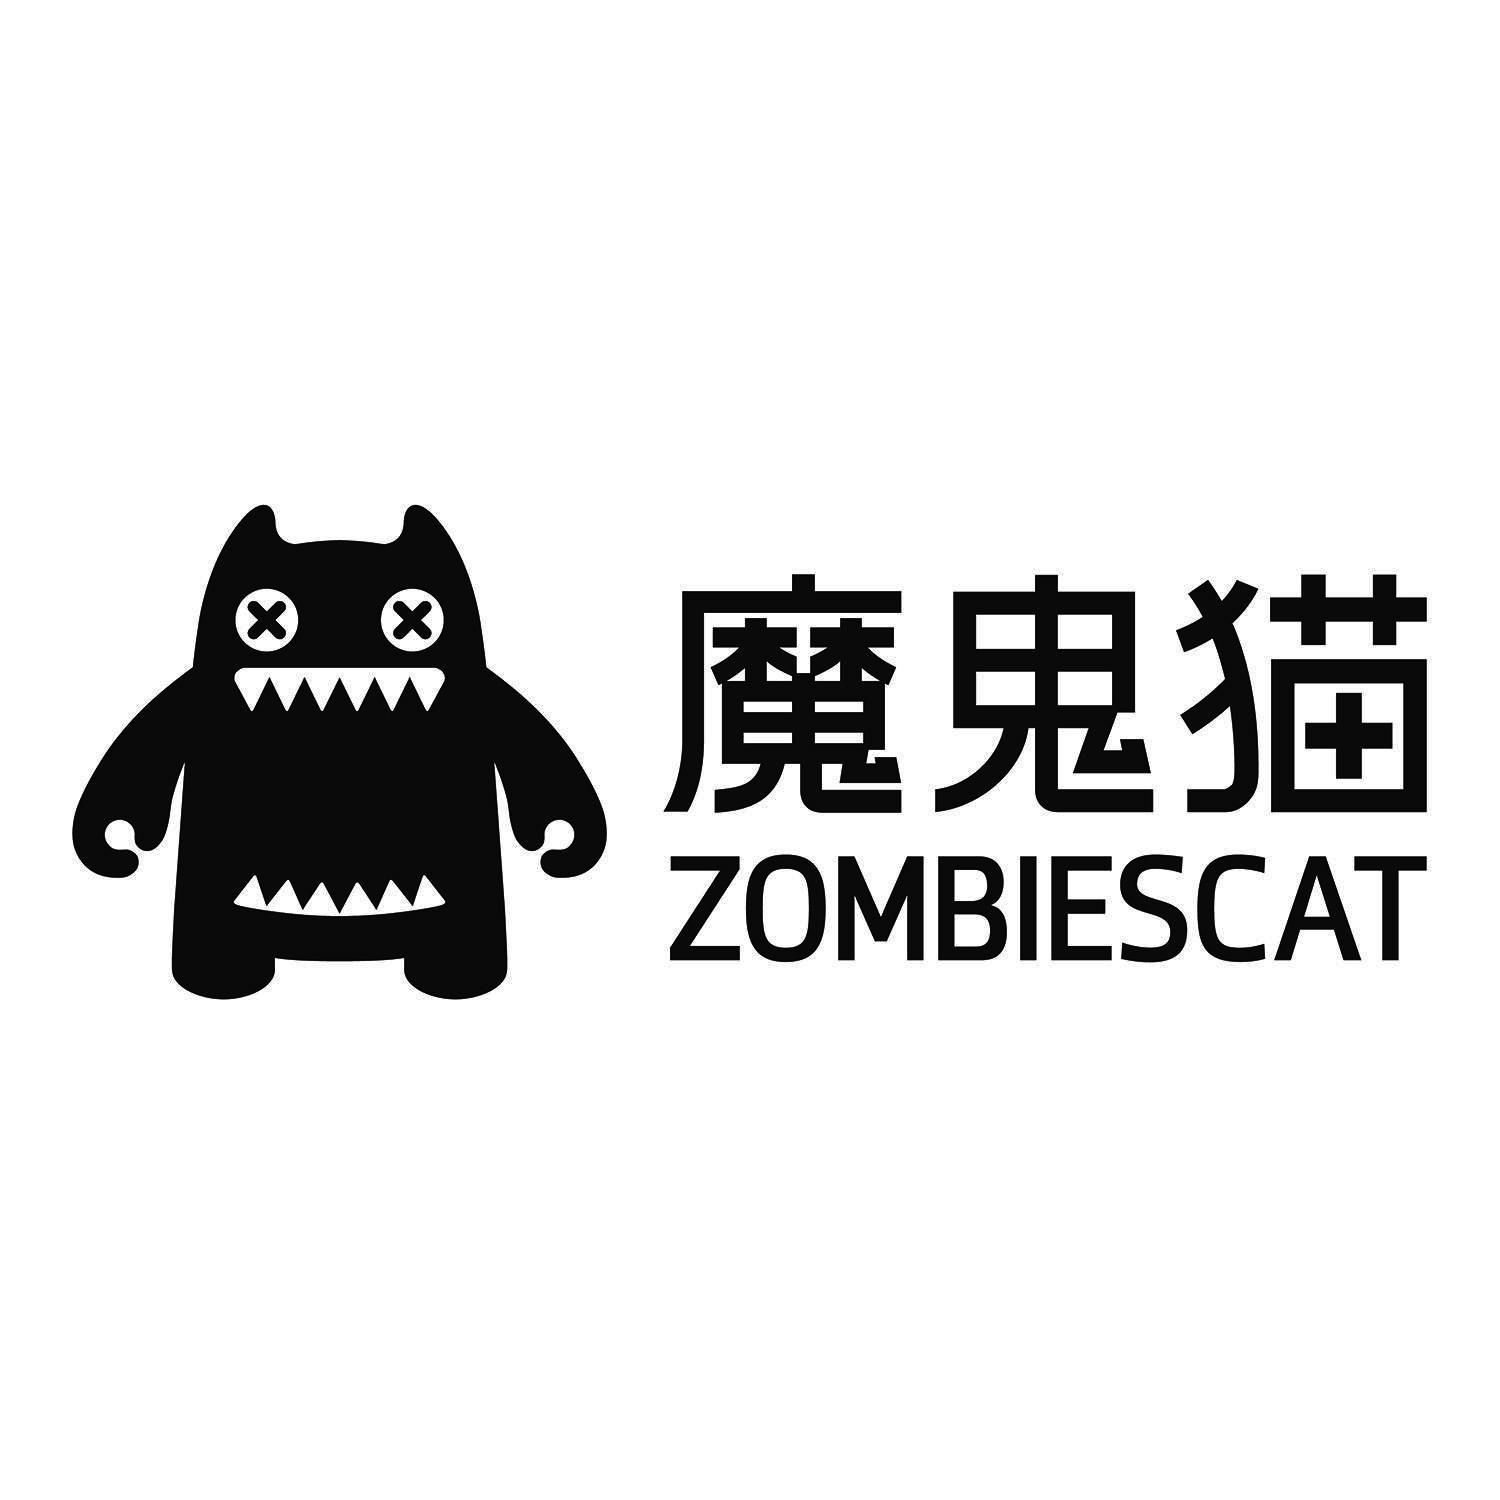 魔鬼猫 zombiescat 商标公告